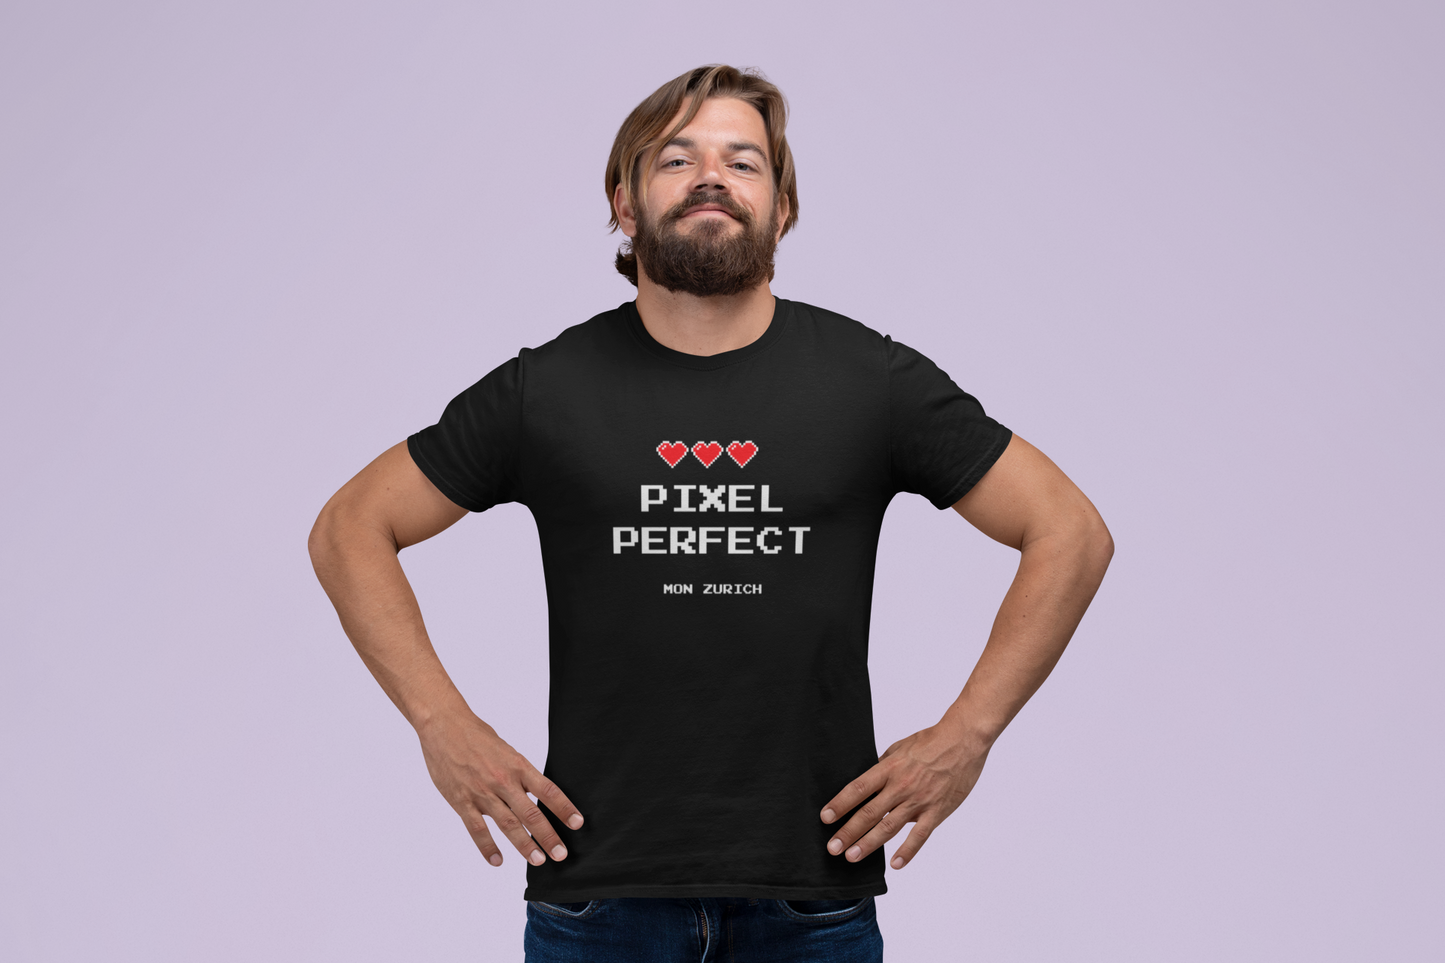 Pixel Perfct T-Shirt In Dark - Mon Zurich Originals